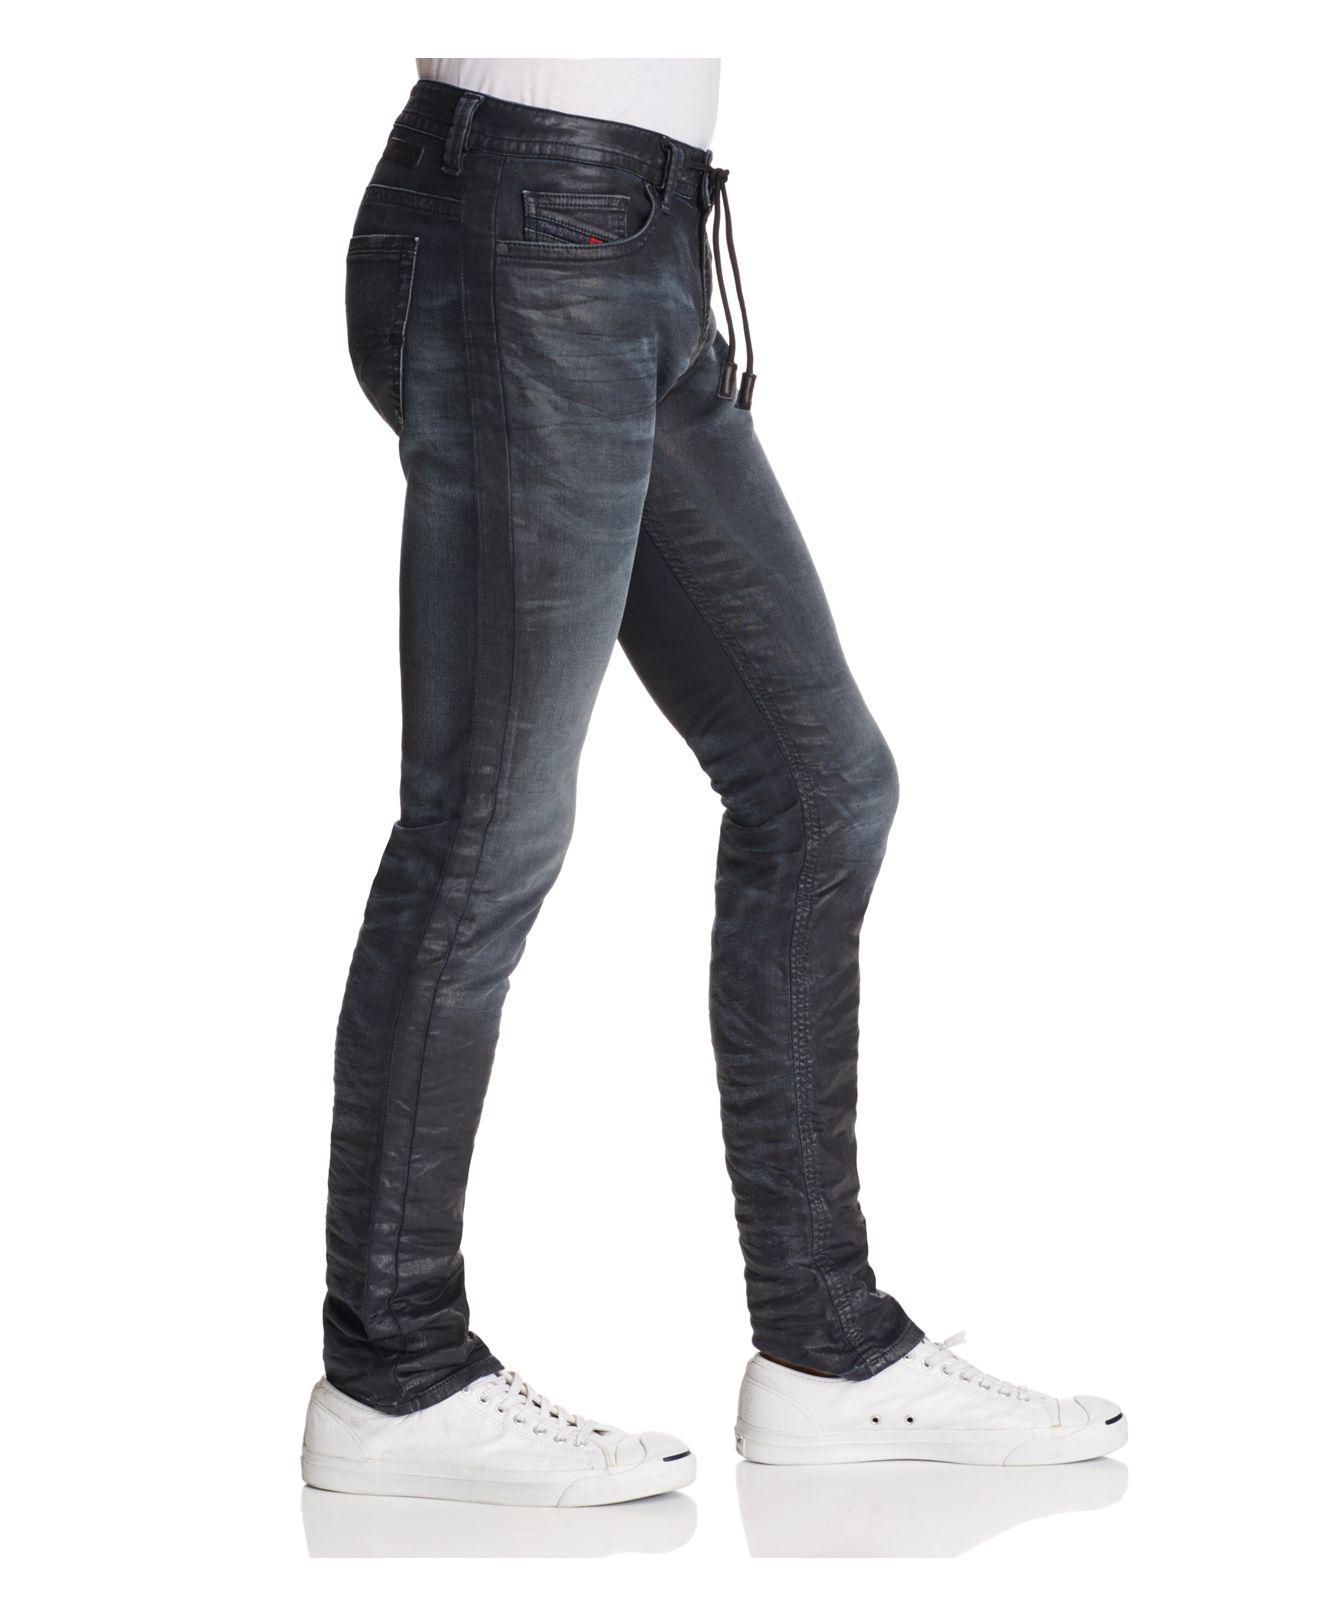 Lyst - Diesel Thavar Spc-ne Slim Fit Jog Jeans In Black in Black for Men